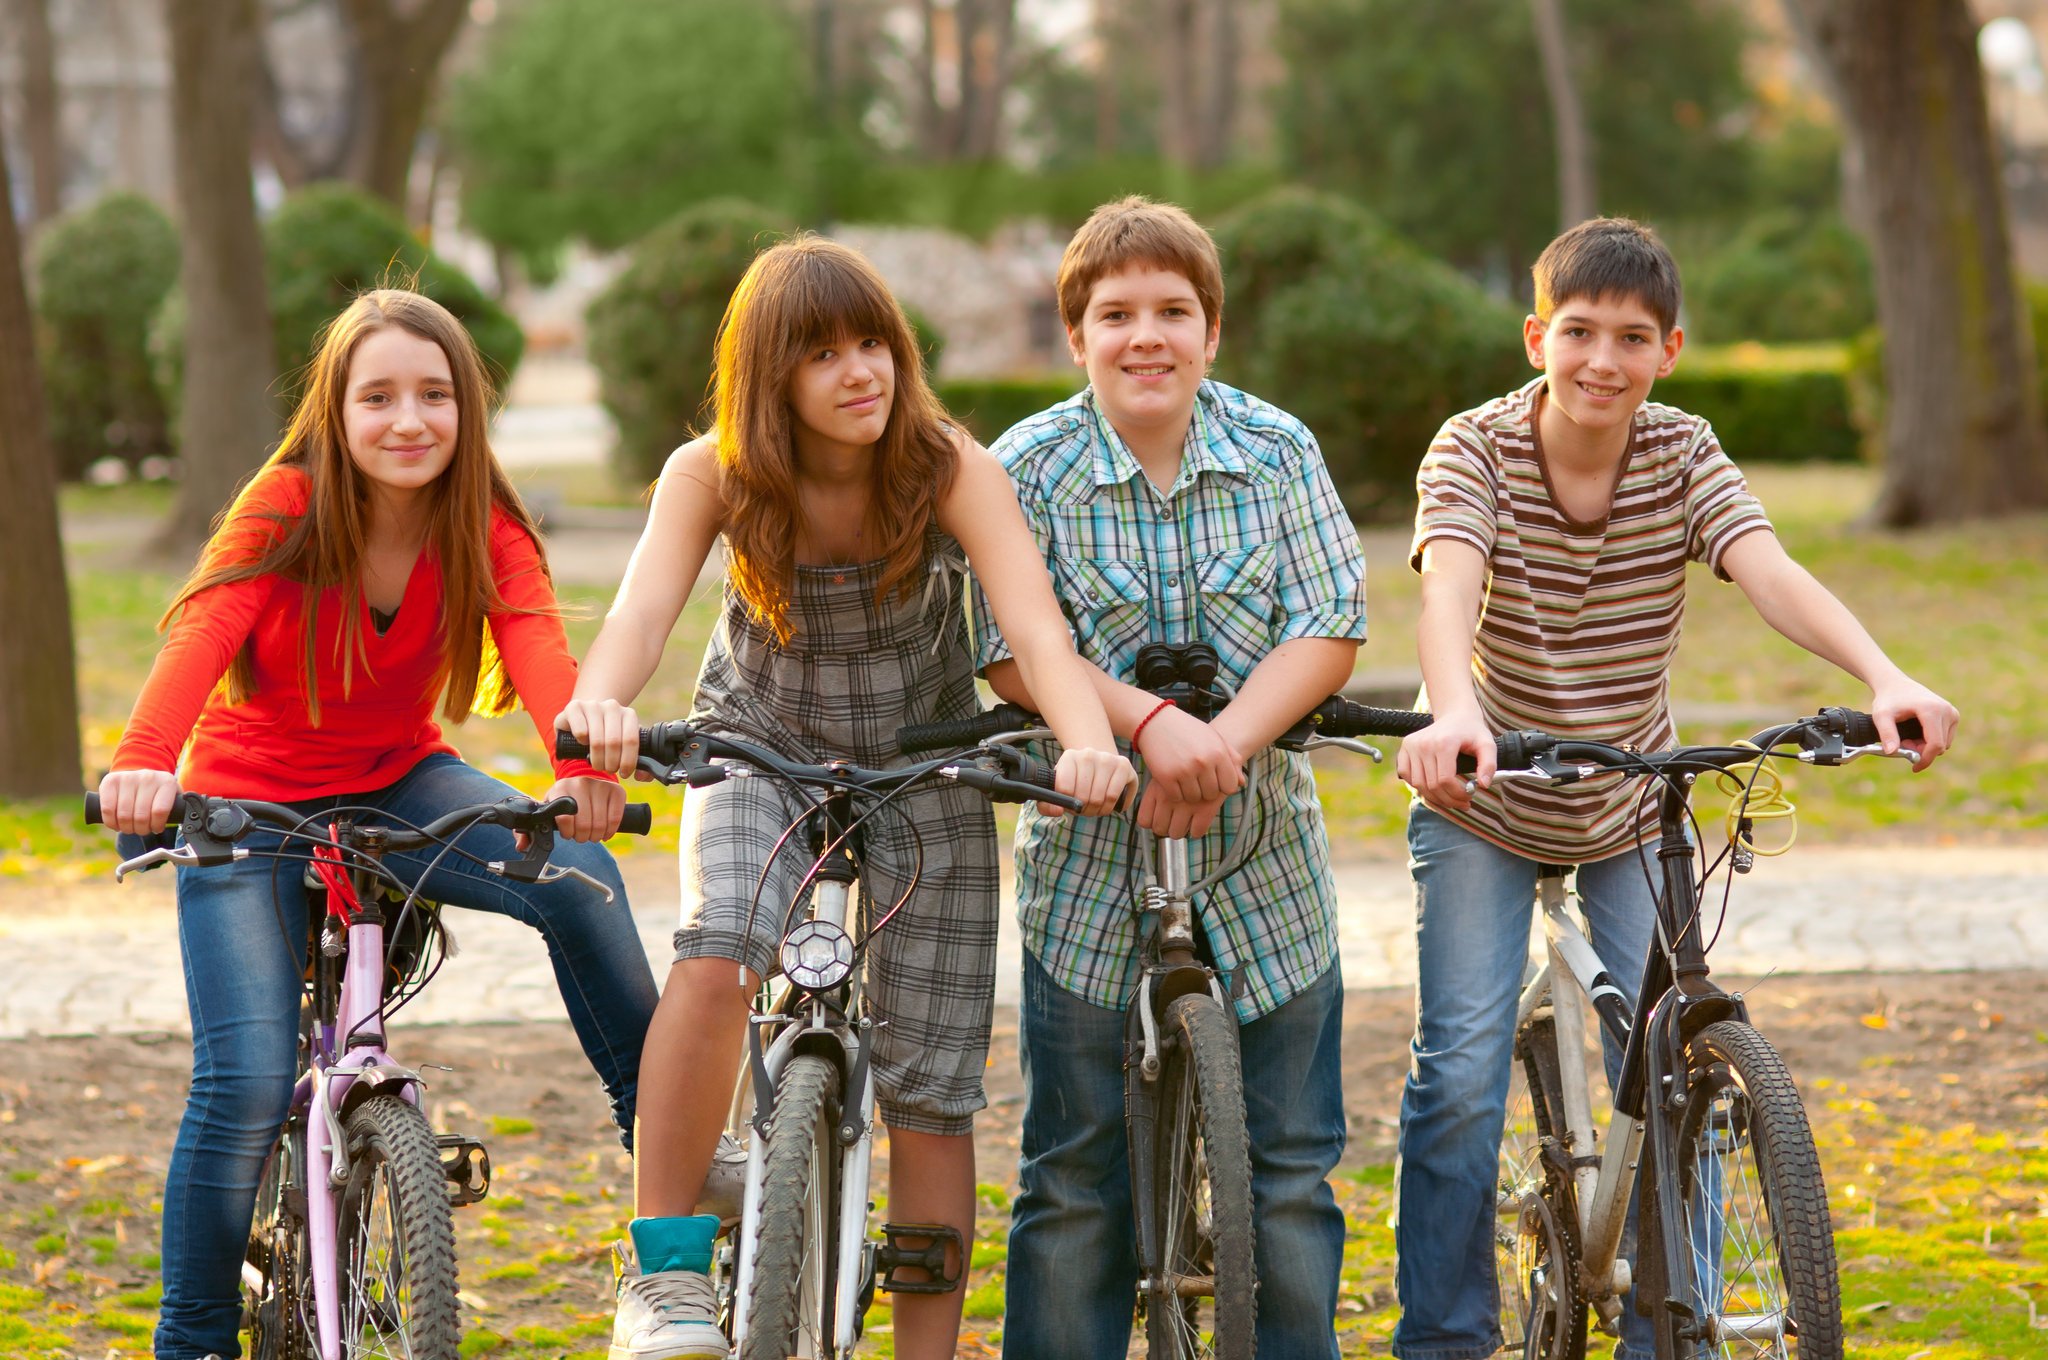 Описание фото друзей. Подросток на велосипеде. Увлечения подростков. Счастливые подростки. Дружба подростков.